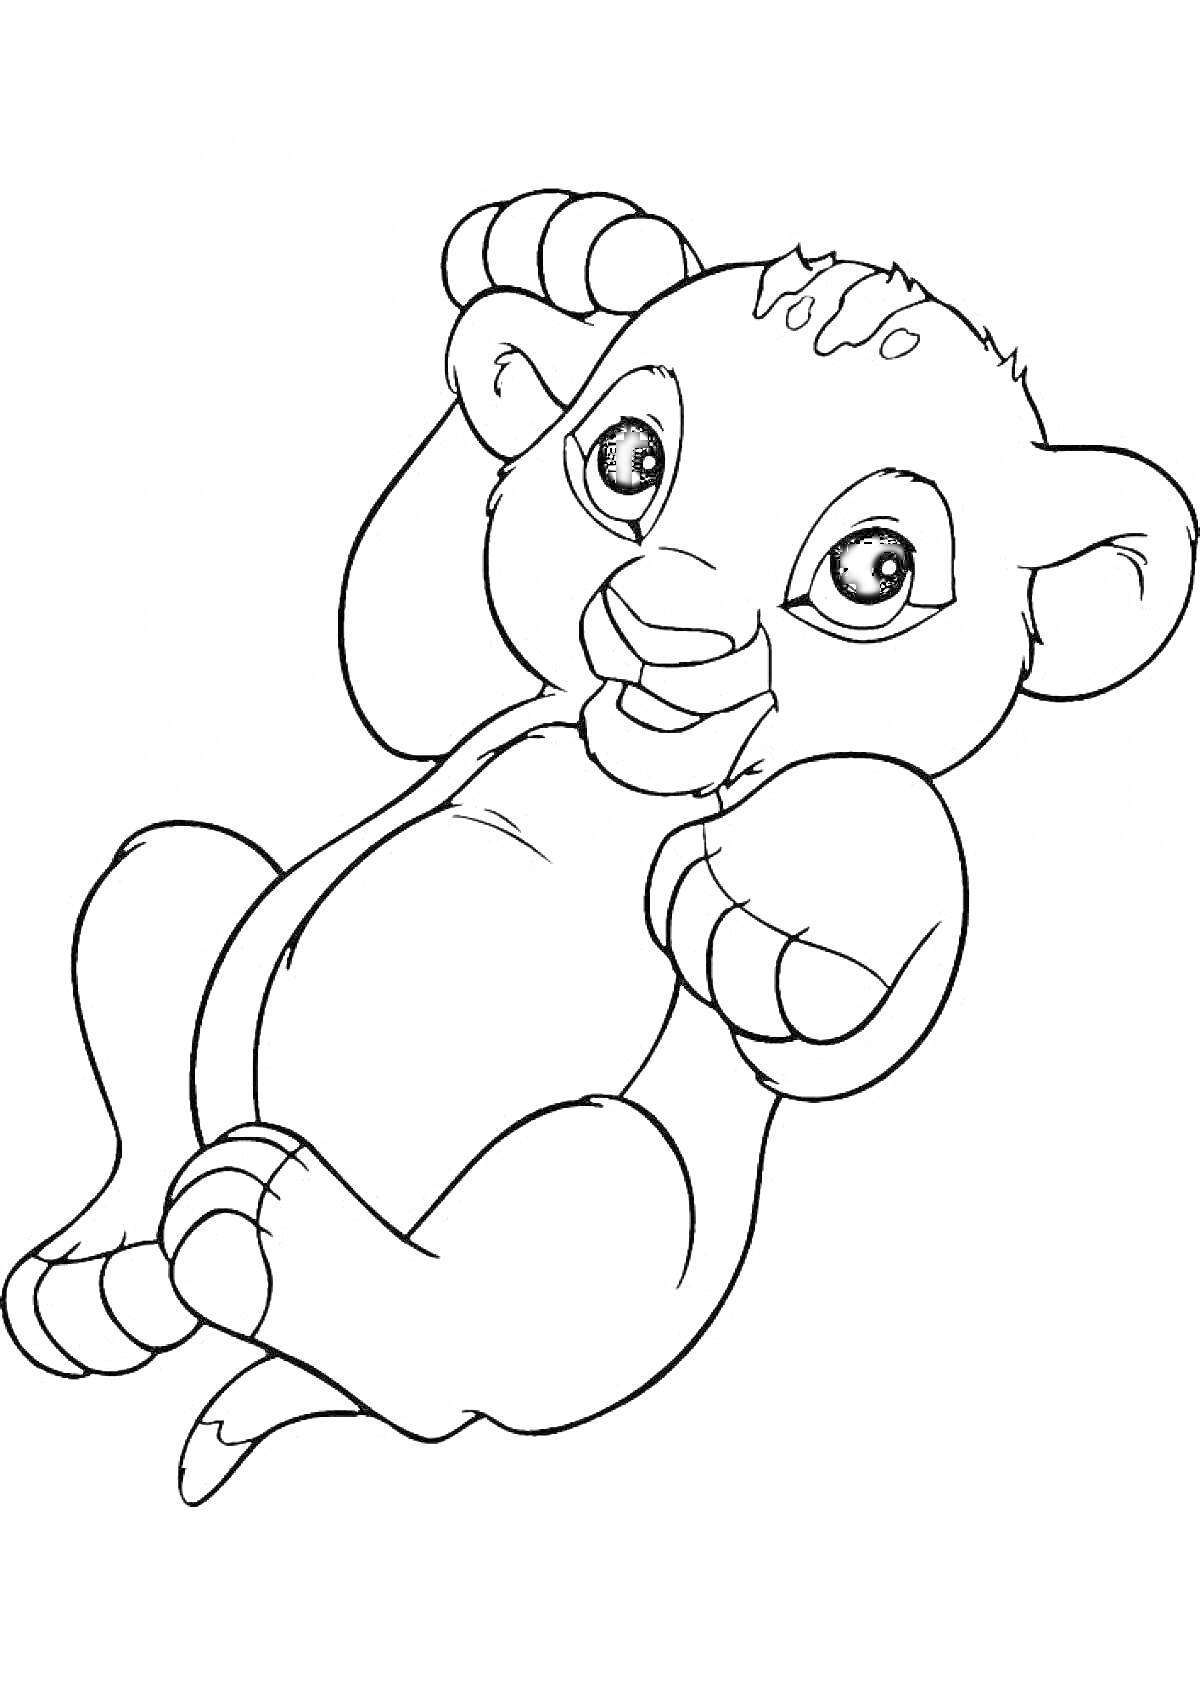 Раскраска Симба из мультфильма, лежащий на спине, с лапами вверх